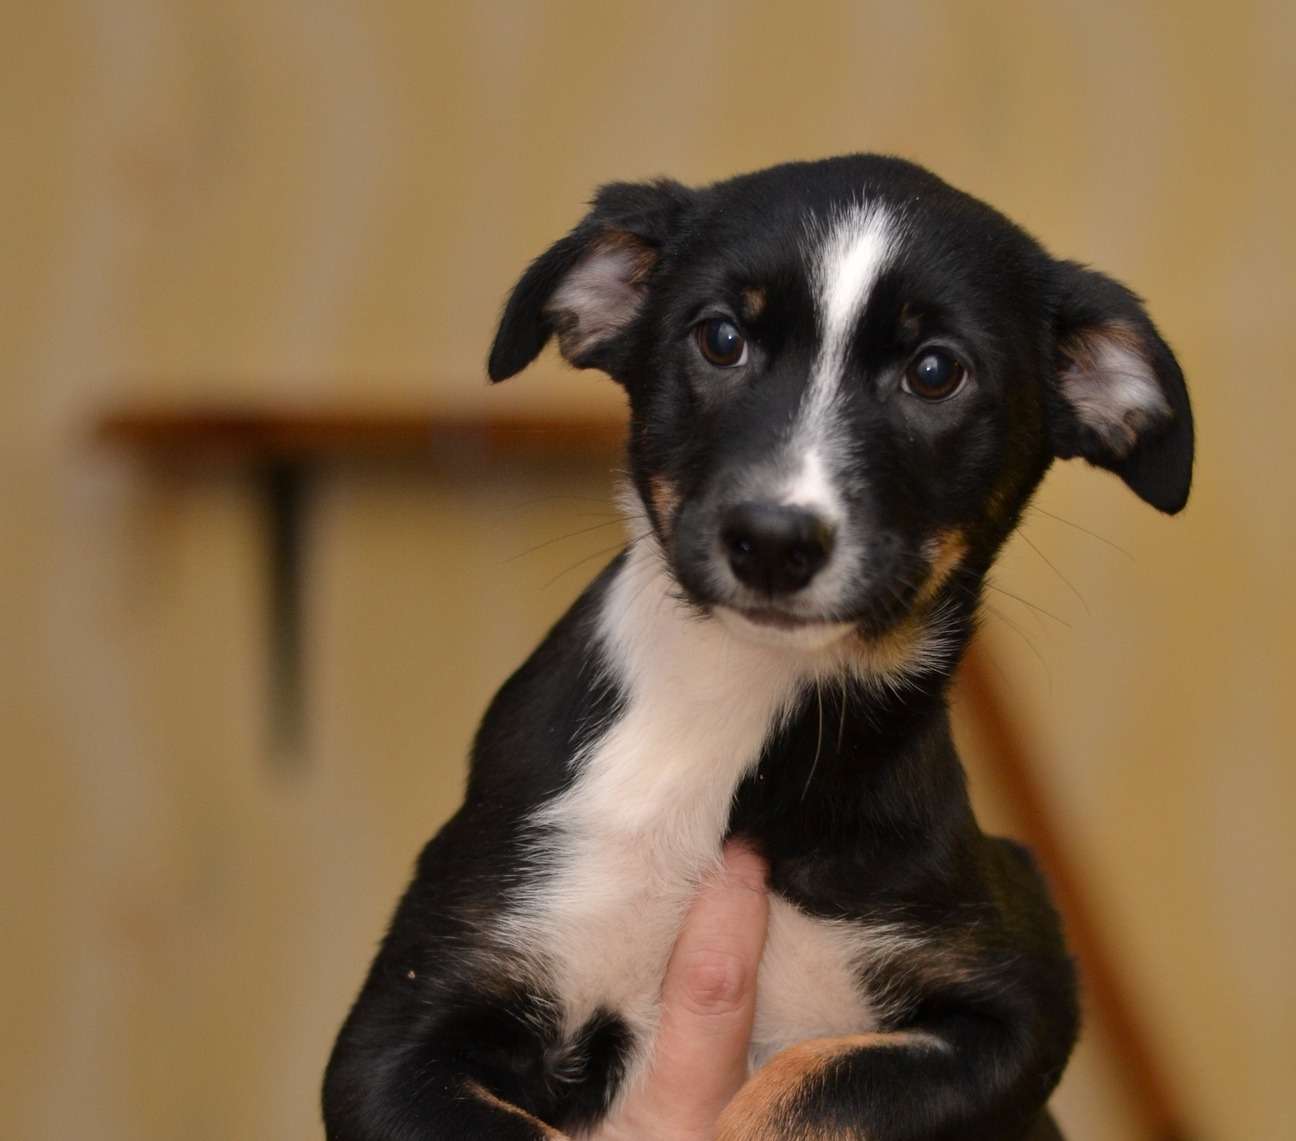 «Звездным щенкам» в Йошкар-Оле нужен «молочный» спонсор